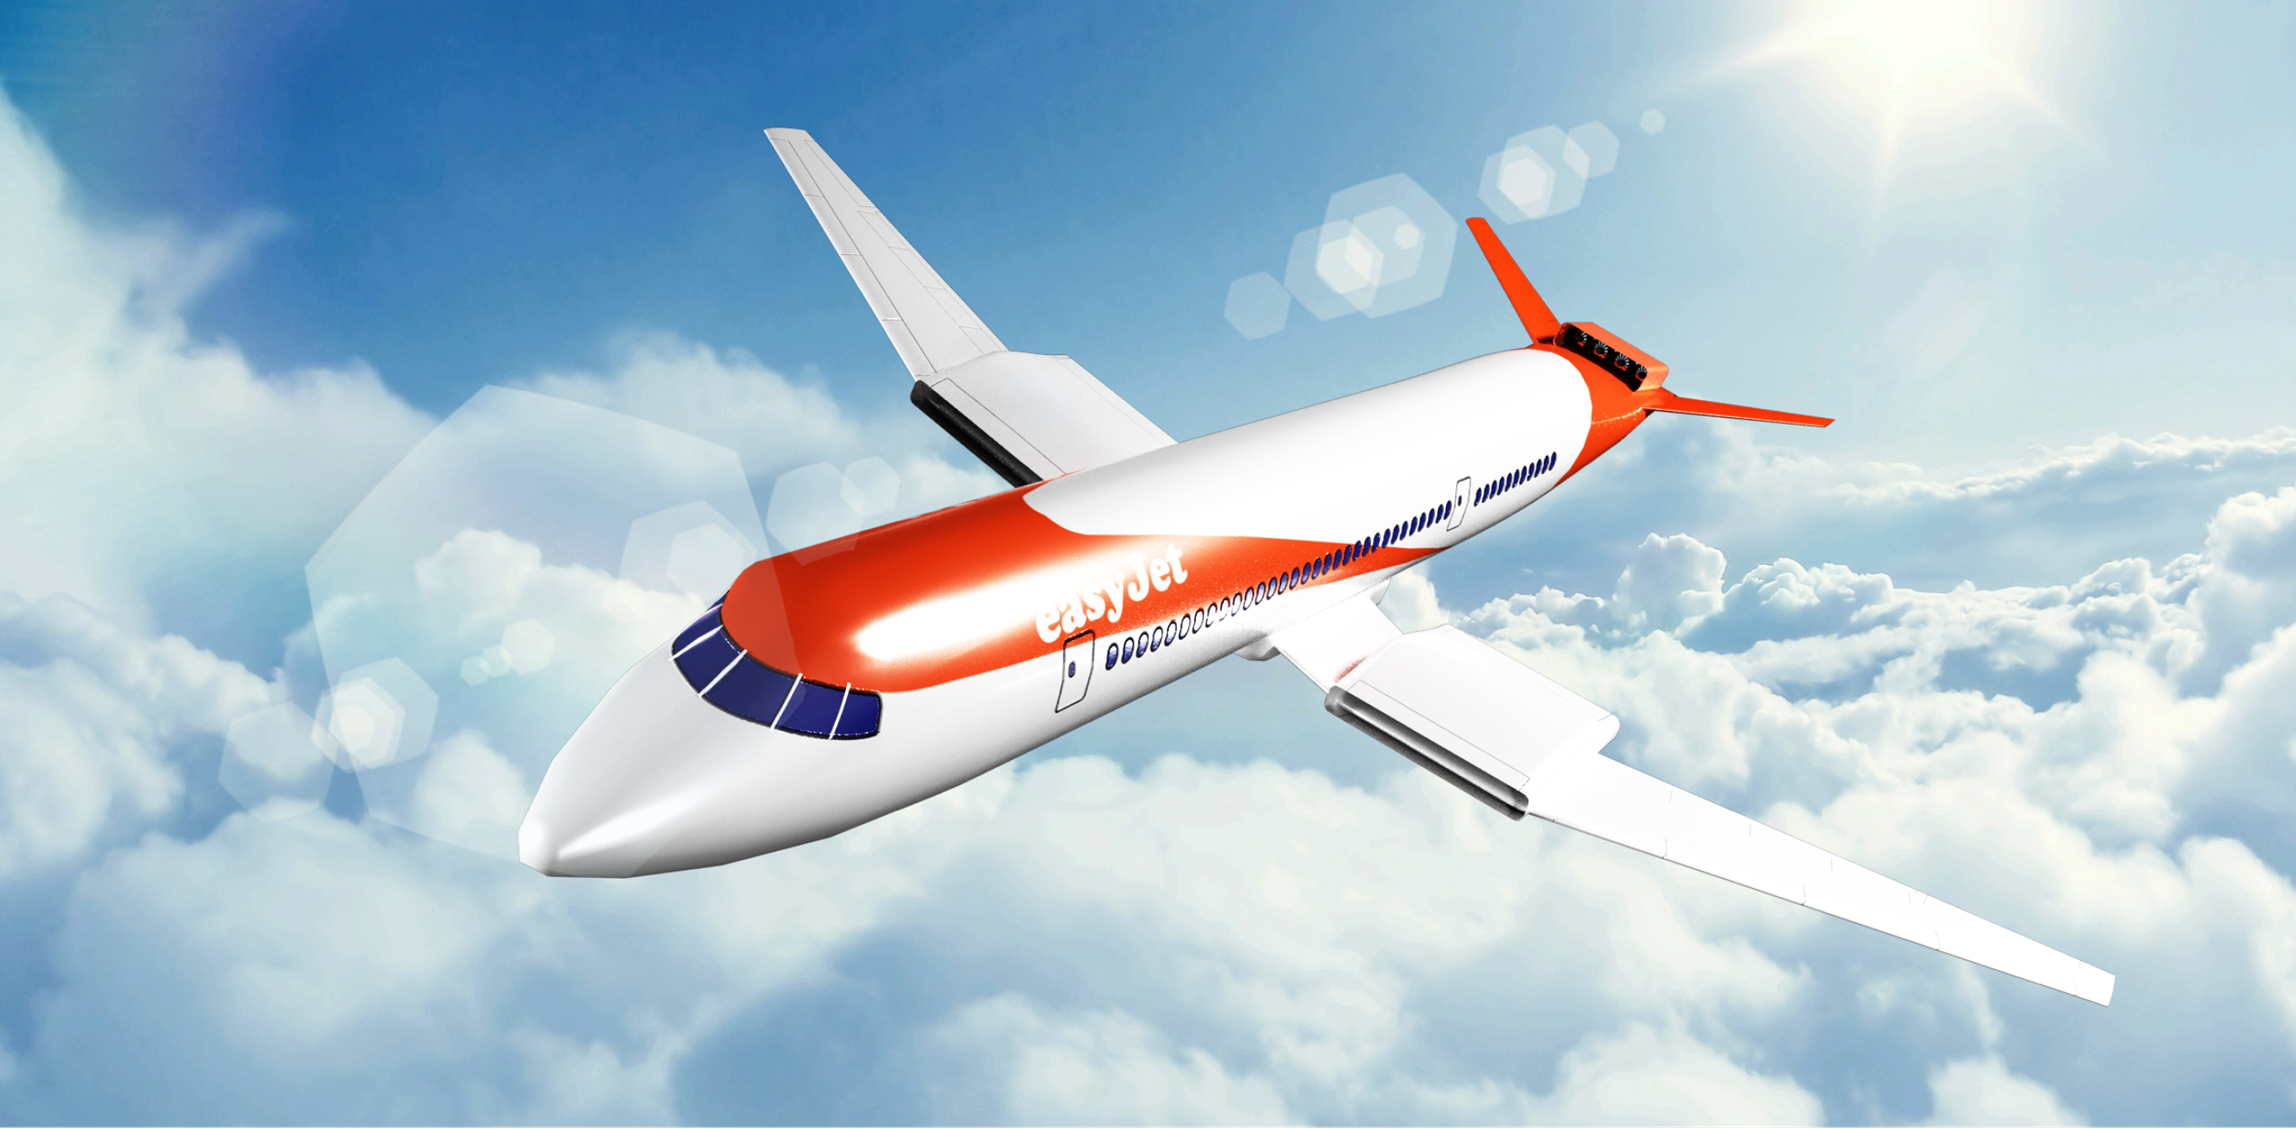 Lietadlá s nulovými emisiami: easyJet vyzýva na spoluprácu medzi vládami a sektorom letectva 1